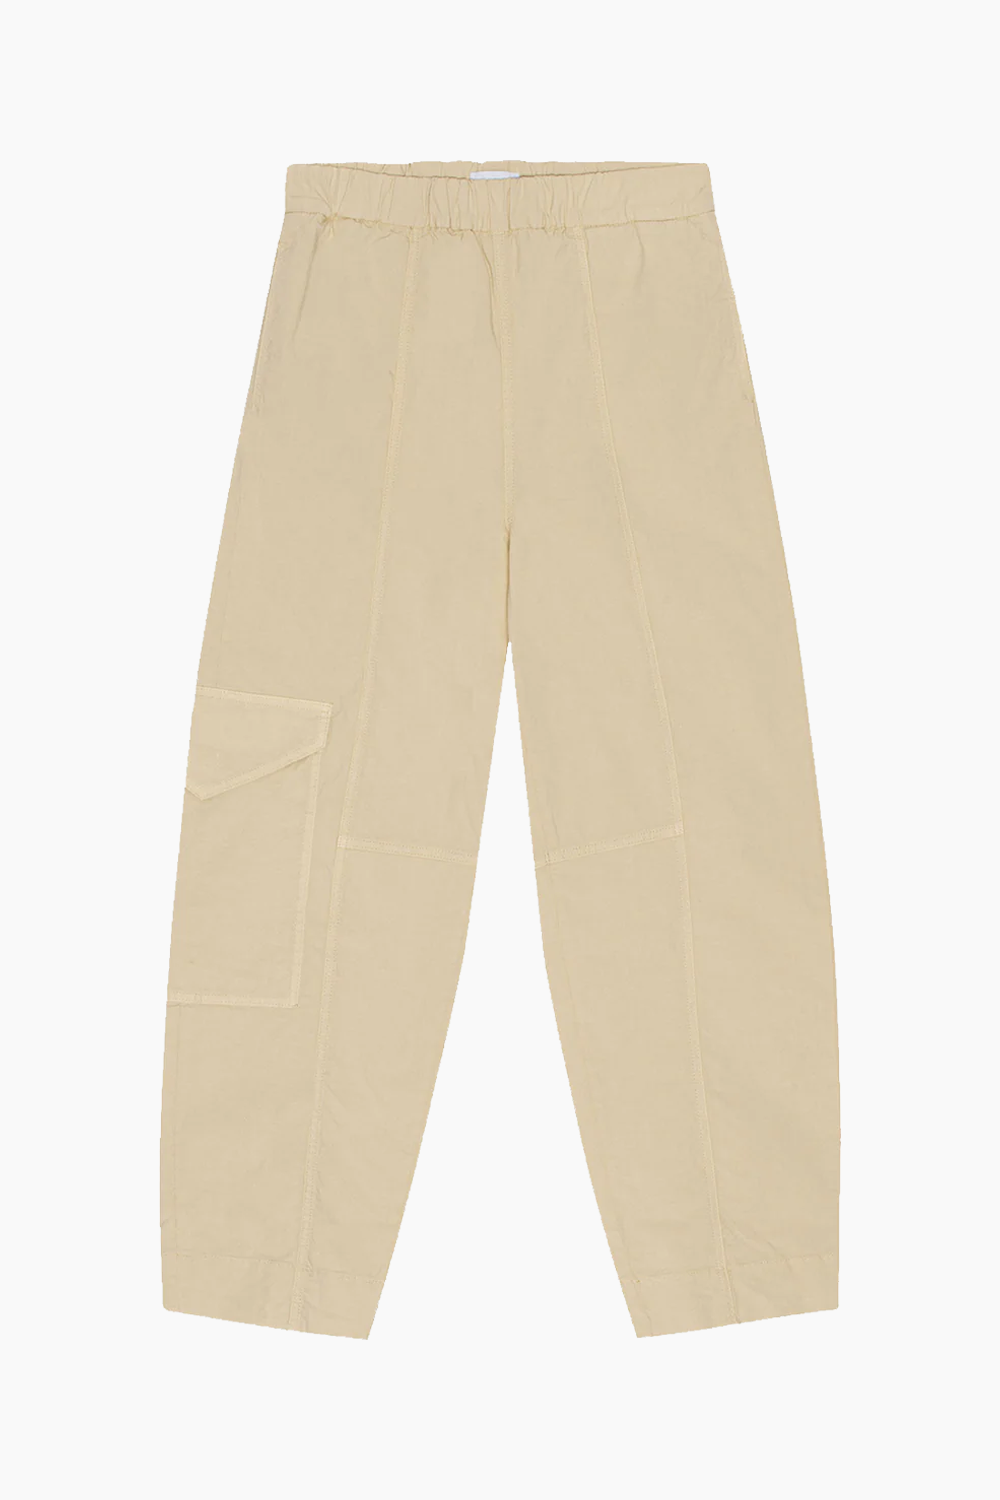 Se Washed Cotton Canvas Elasticated Curve Pants F8073 - Pale Khaki - GANNI - Beige XL hos QNTS.dk